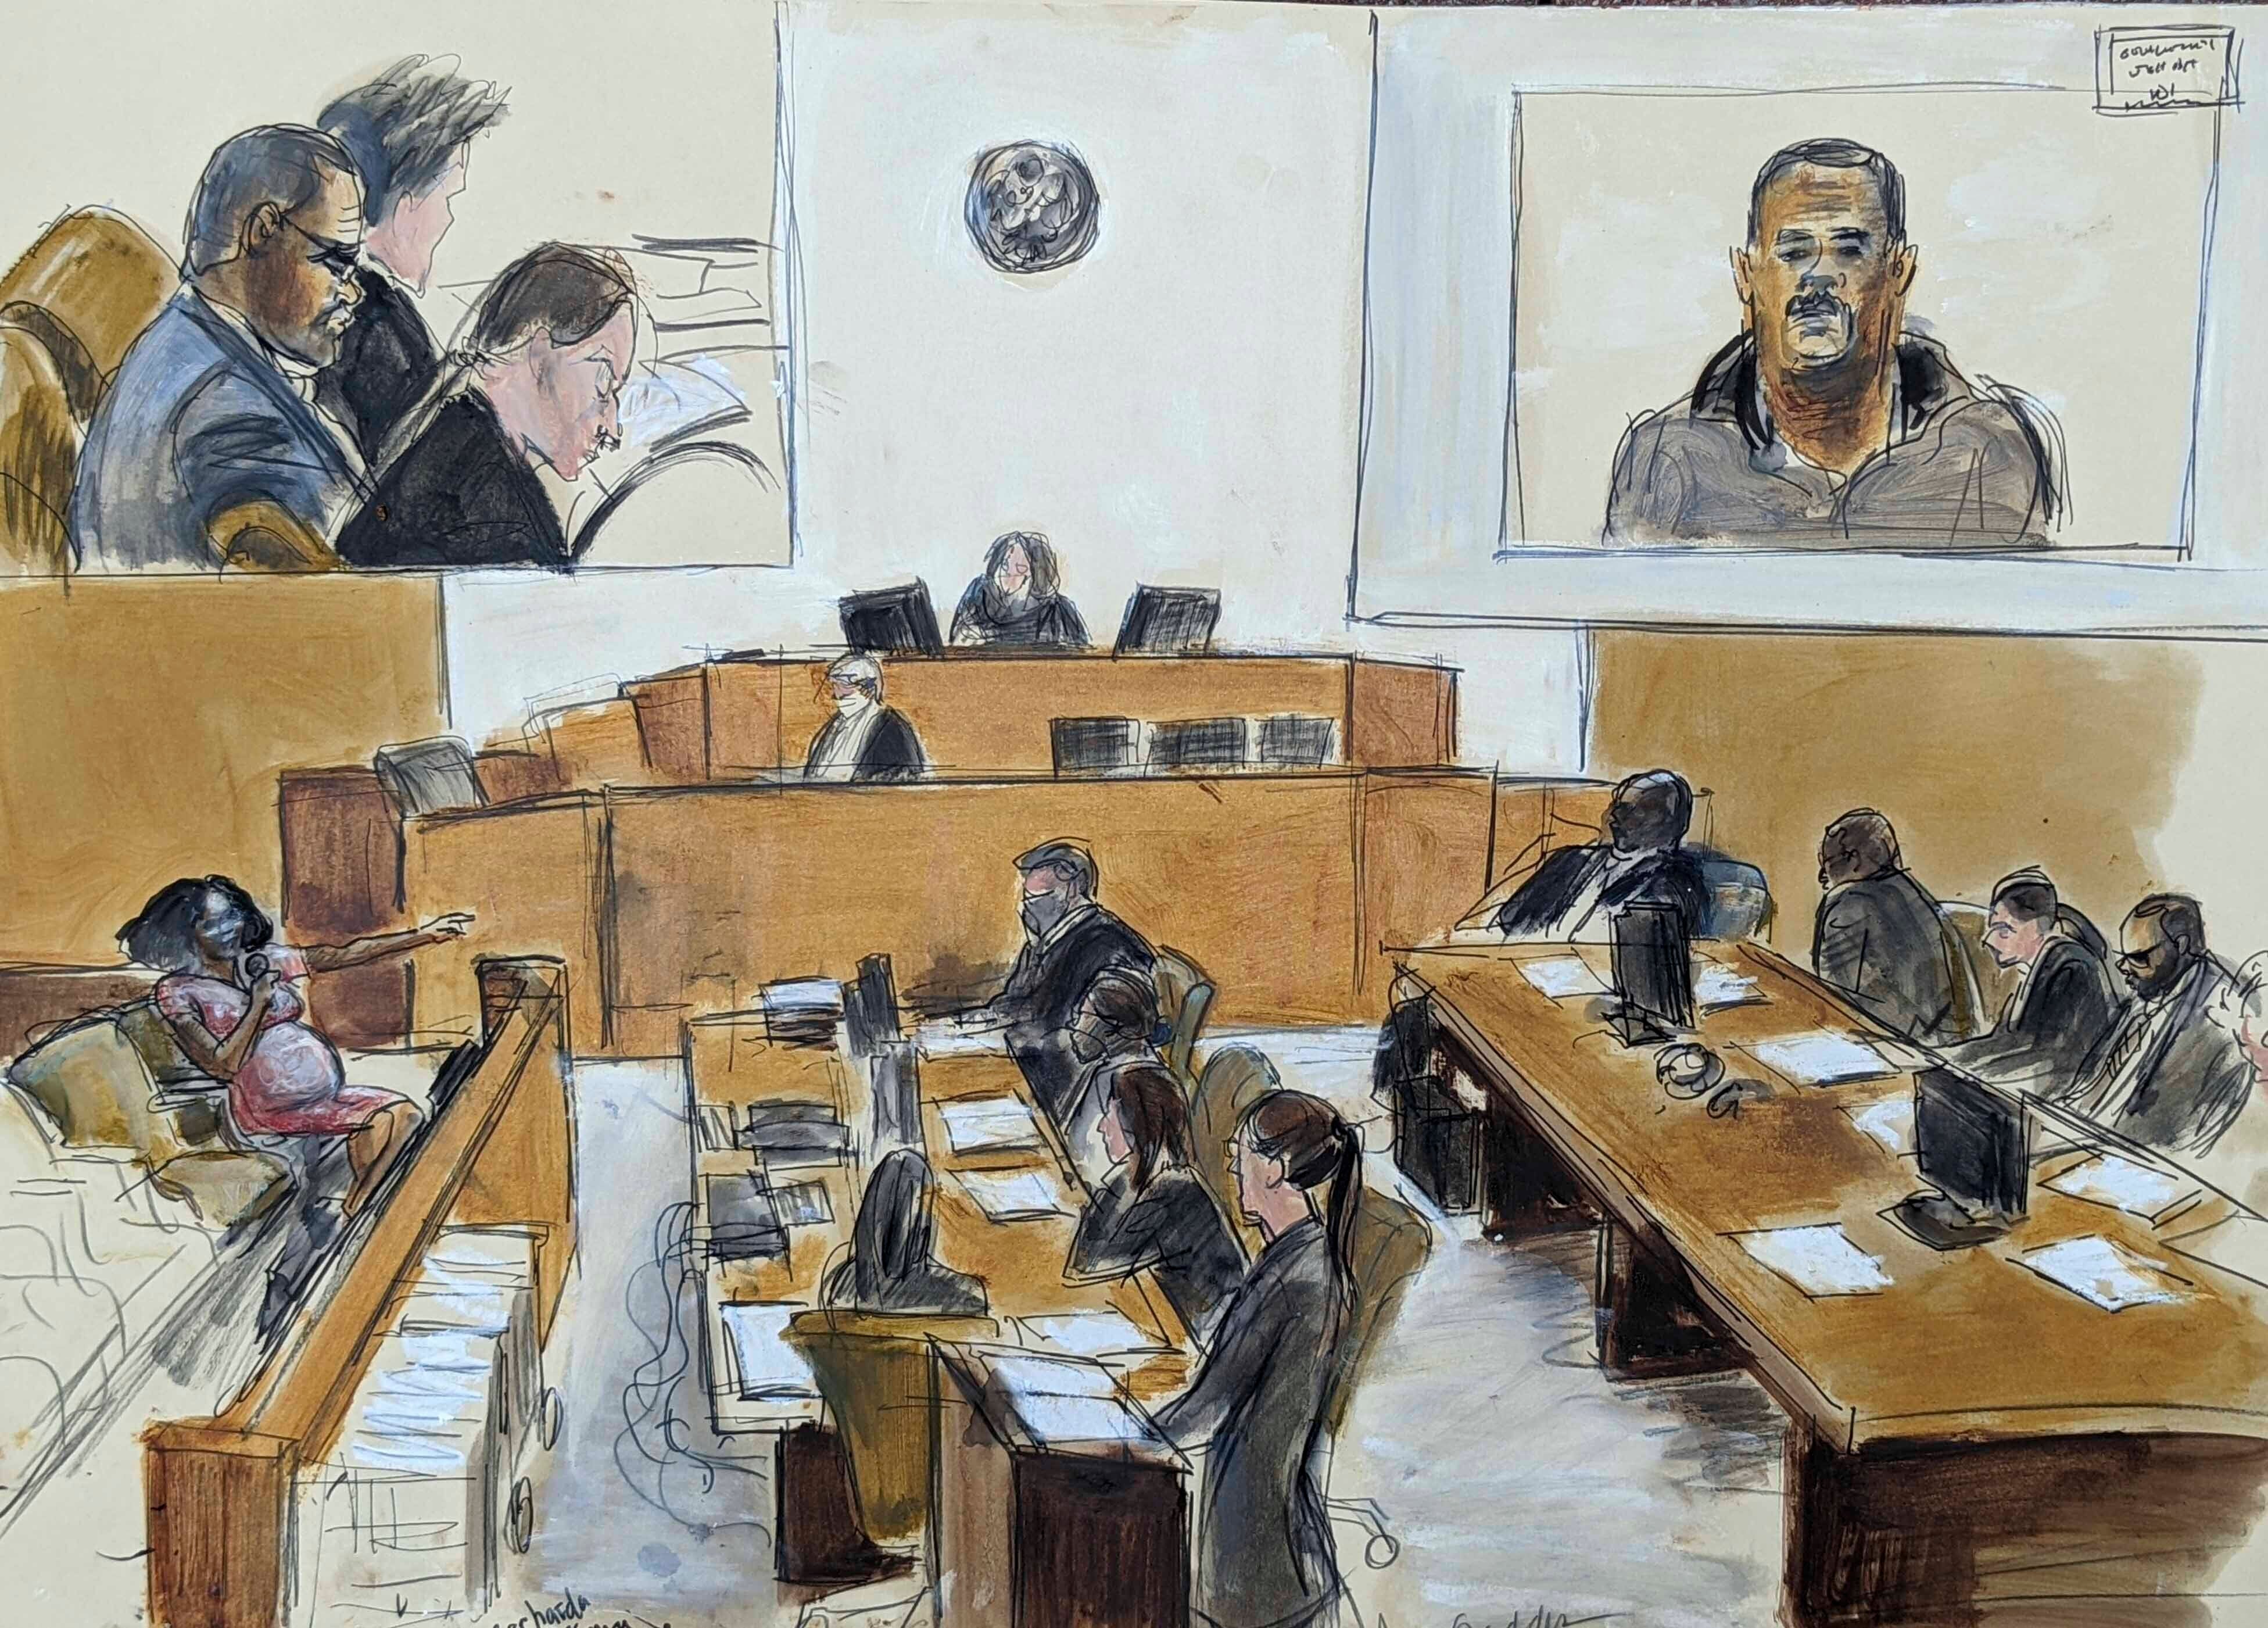 R Kelly Trial